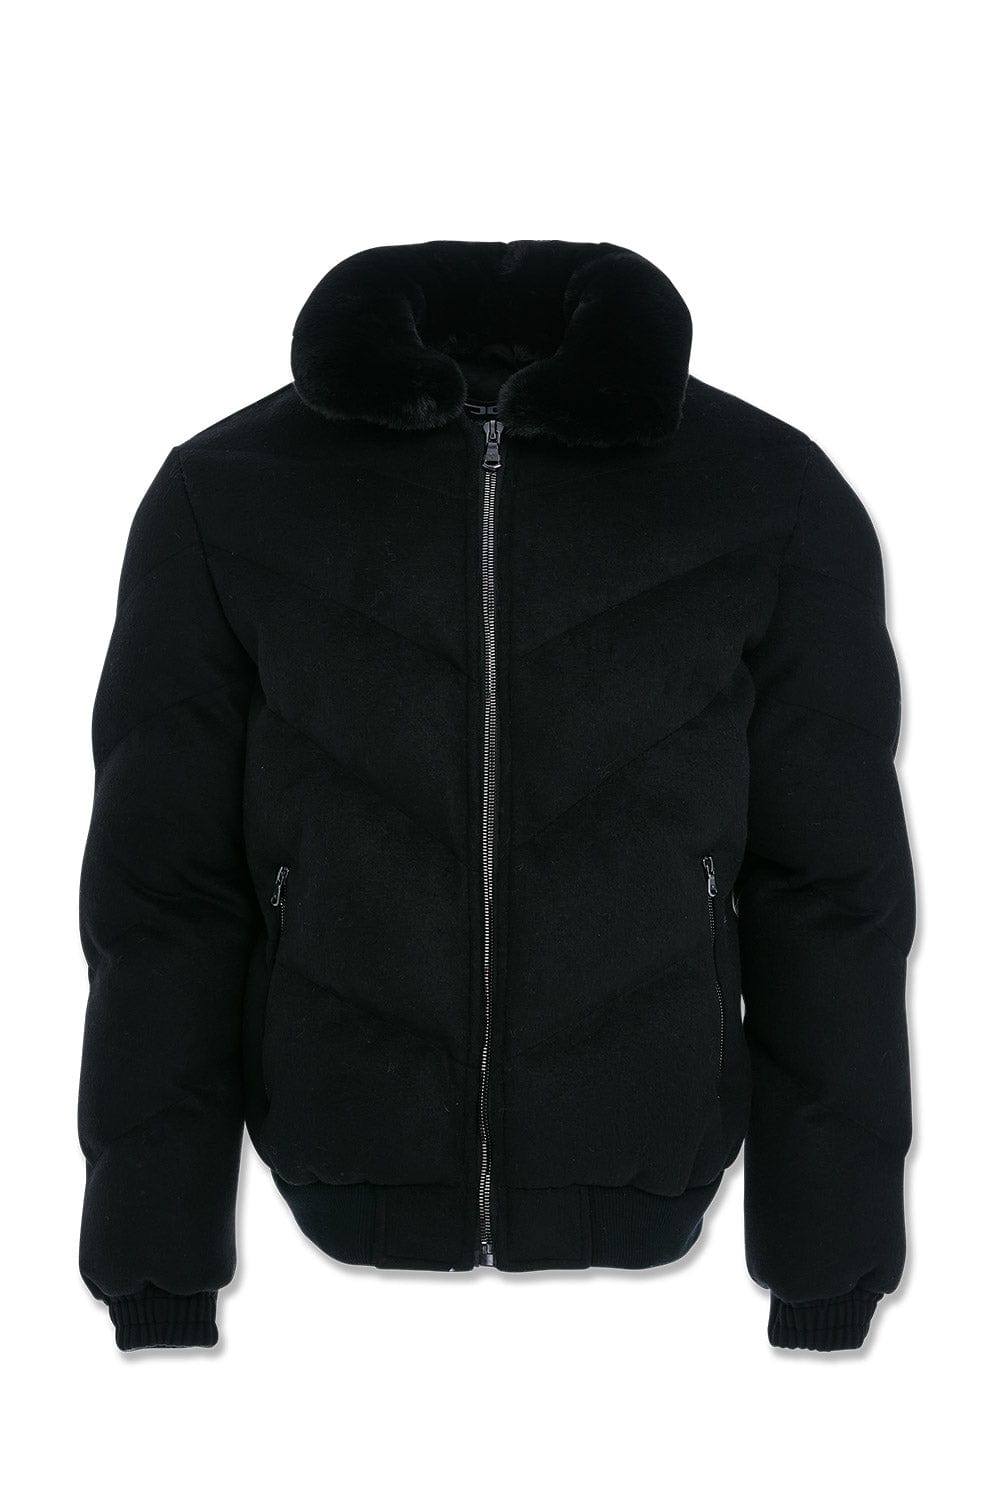 Jordan Craig Everest Wool Bubble Jacket (Black) S / Black